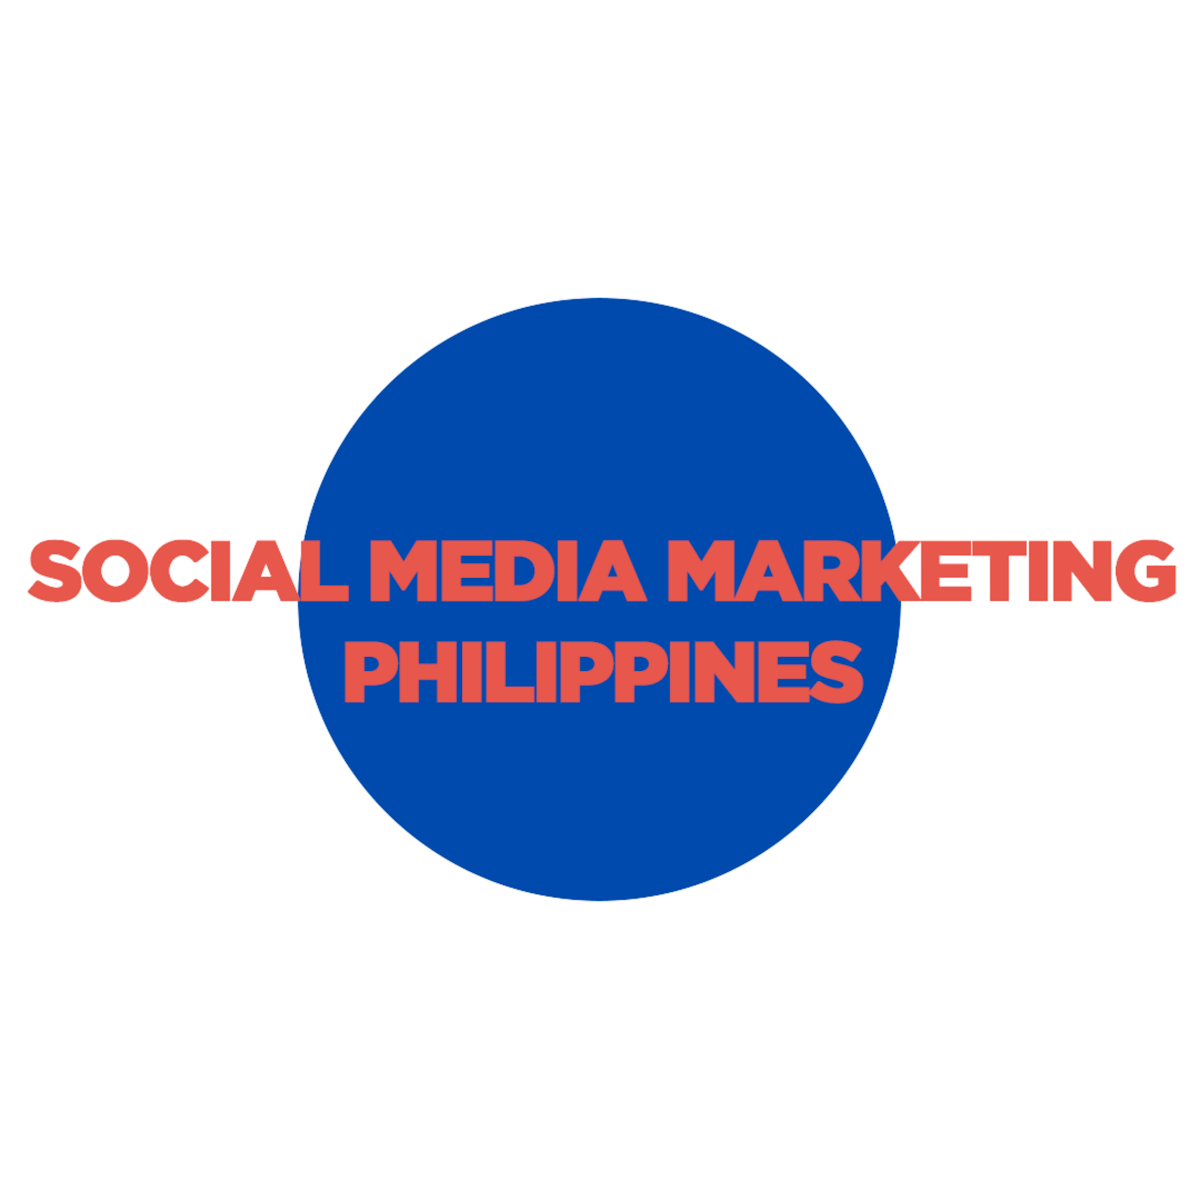 Social Media Marketing Philippines logo